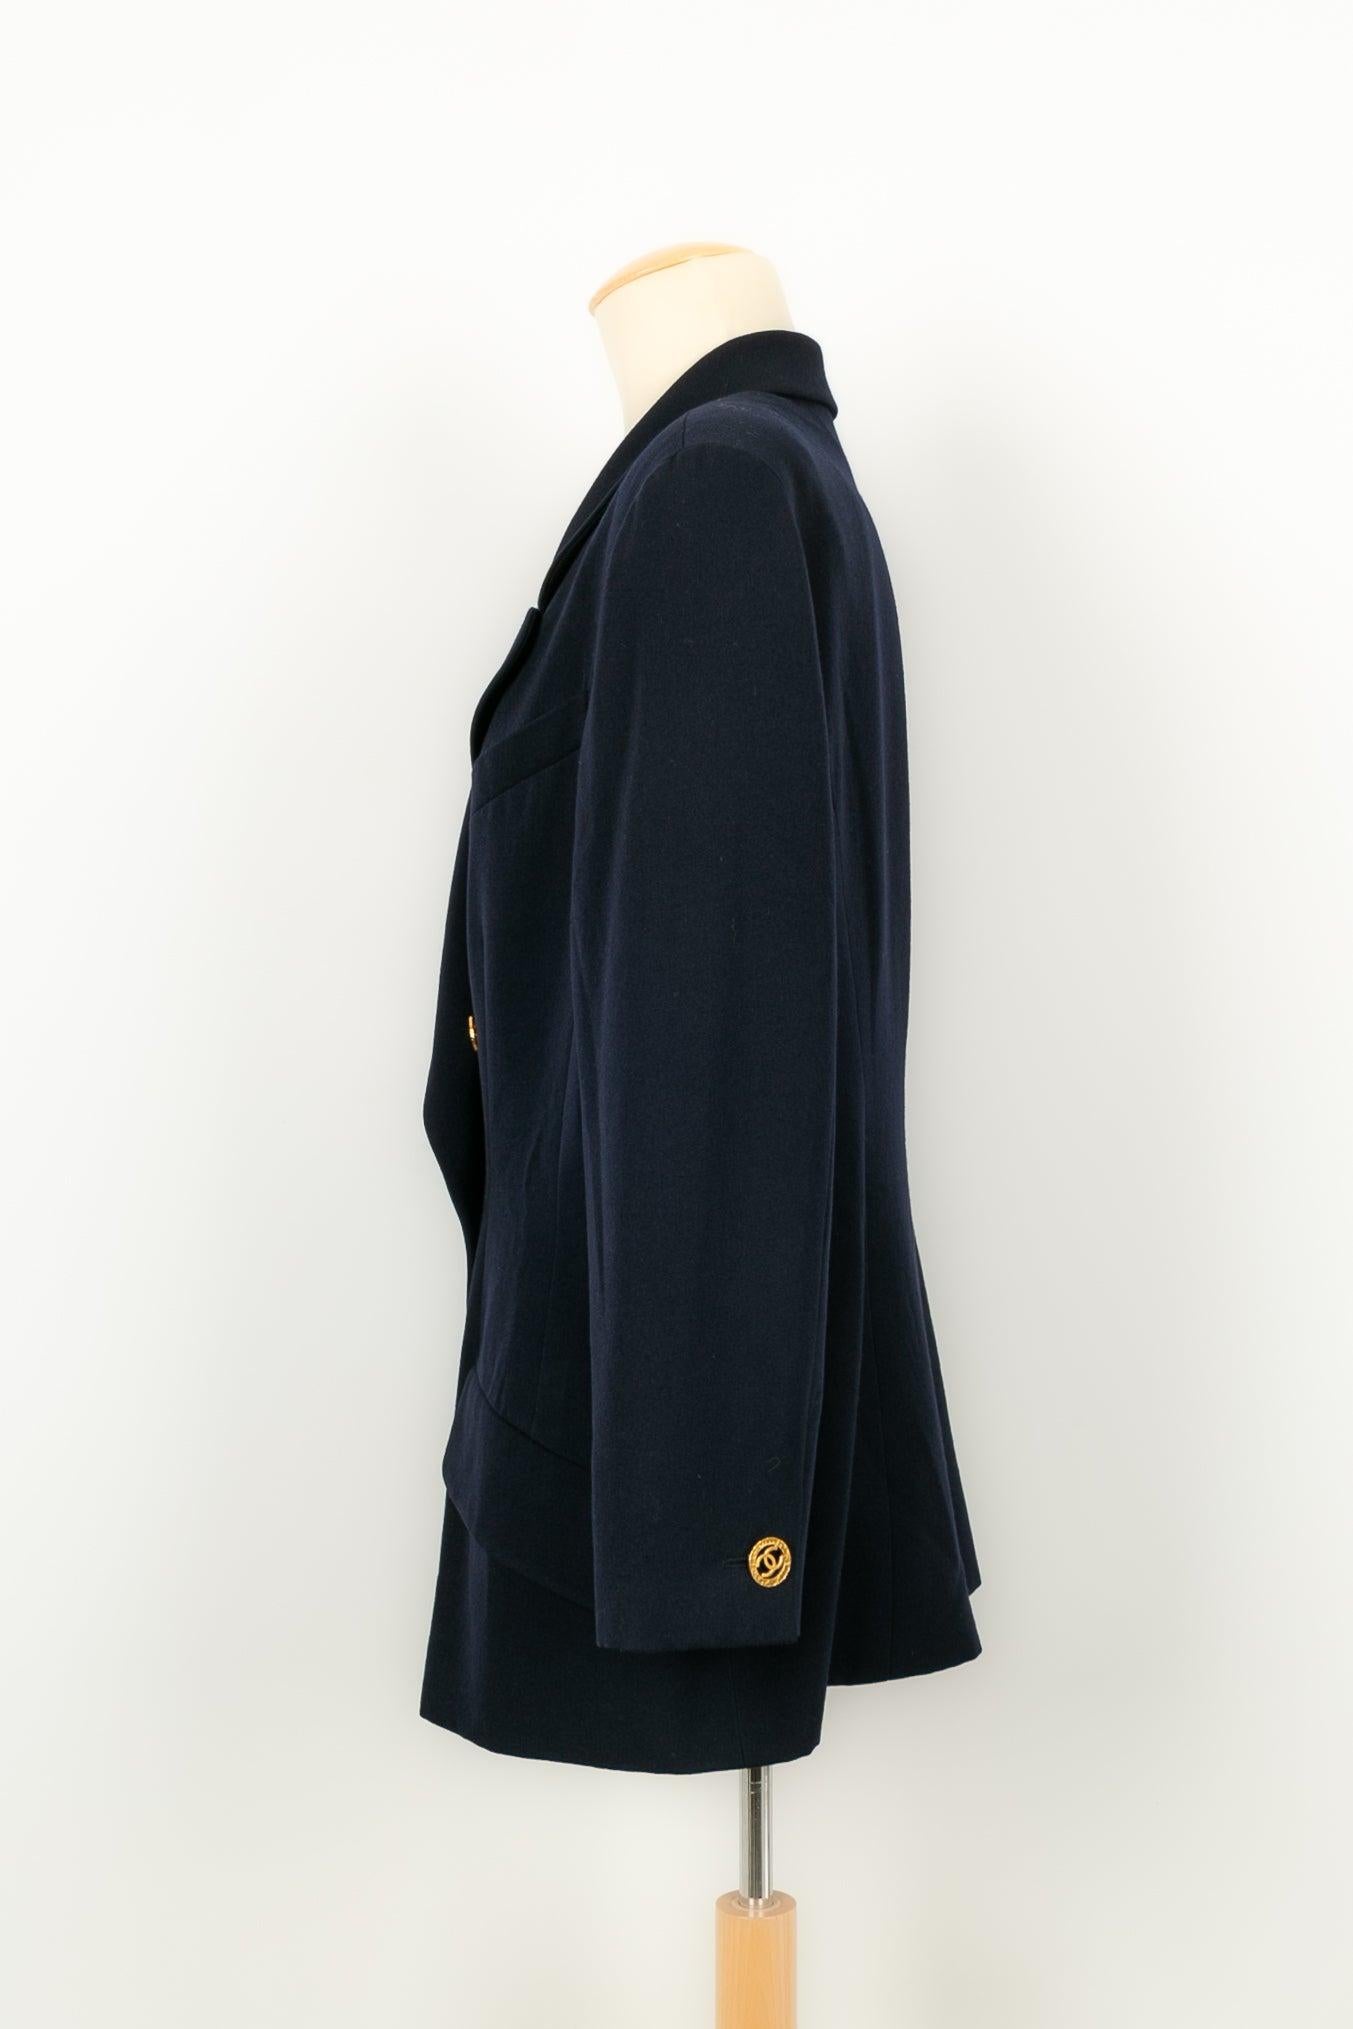 Chanel - Marineblaue Wolljacke mit Seidenfutter. Keine Größe noch Zusammensetzung Label, es passt ein 44FR. Jacke aus den 1990er Jahren.

Zusätzliche Informationen:
Zustand: Sehr guter Zustand
Abmessungen: Schulterbreite: 44 cm - Ärmellänge: 55 cm -